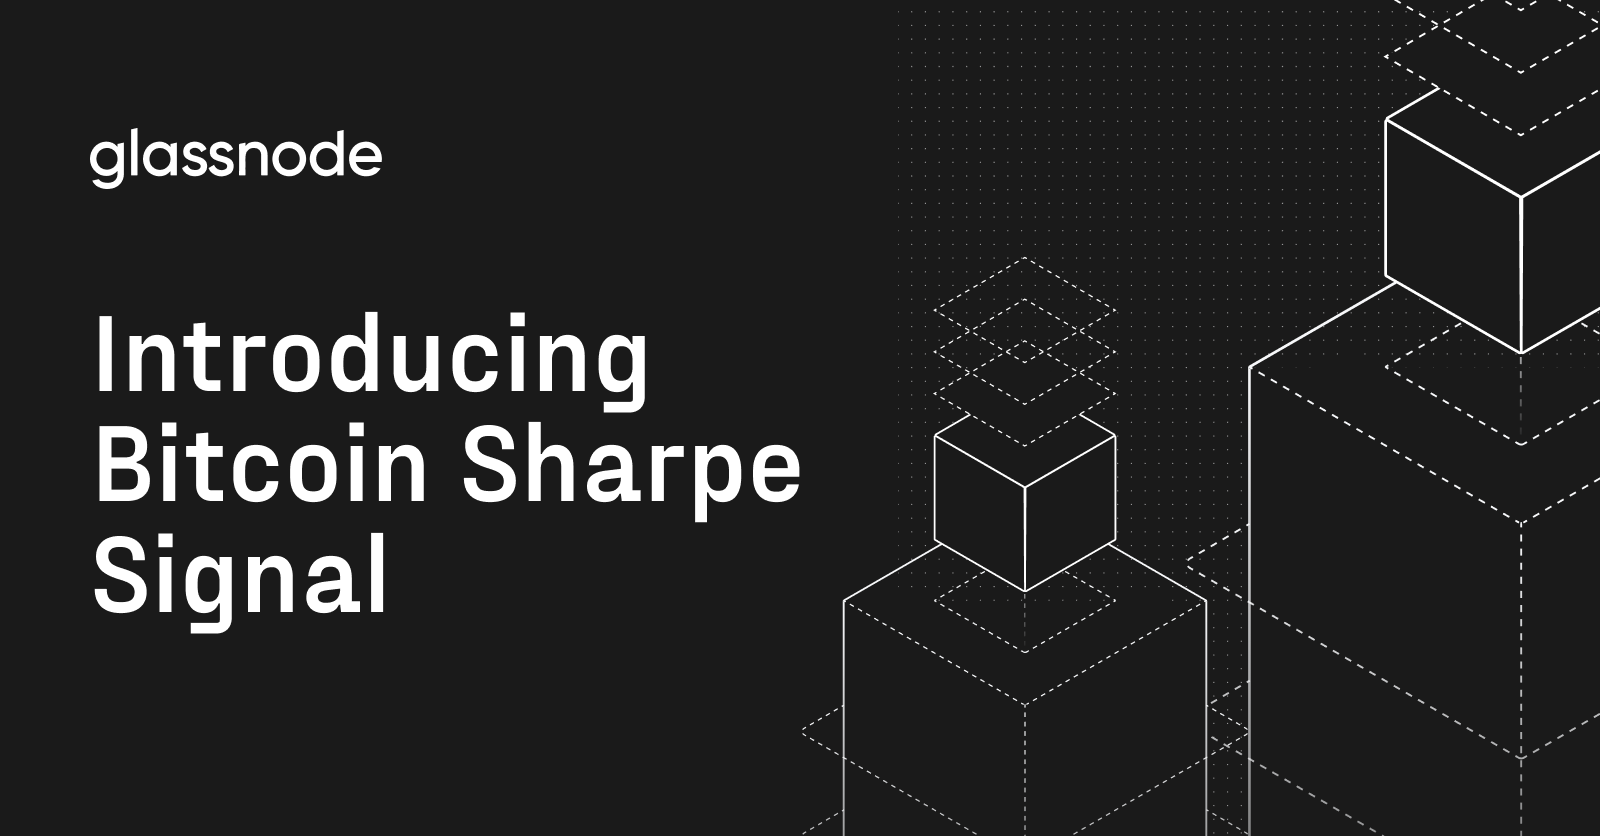 Introductie van Bitcoin Sharpe Signal: Bitcoin-transacties vereenvoudigen met Glassnode-gegevens